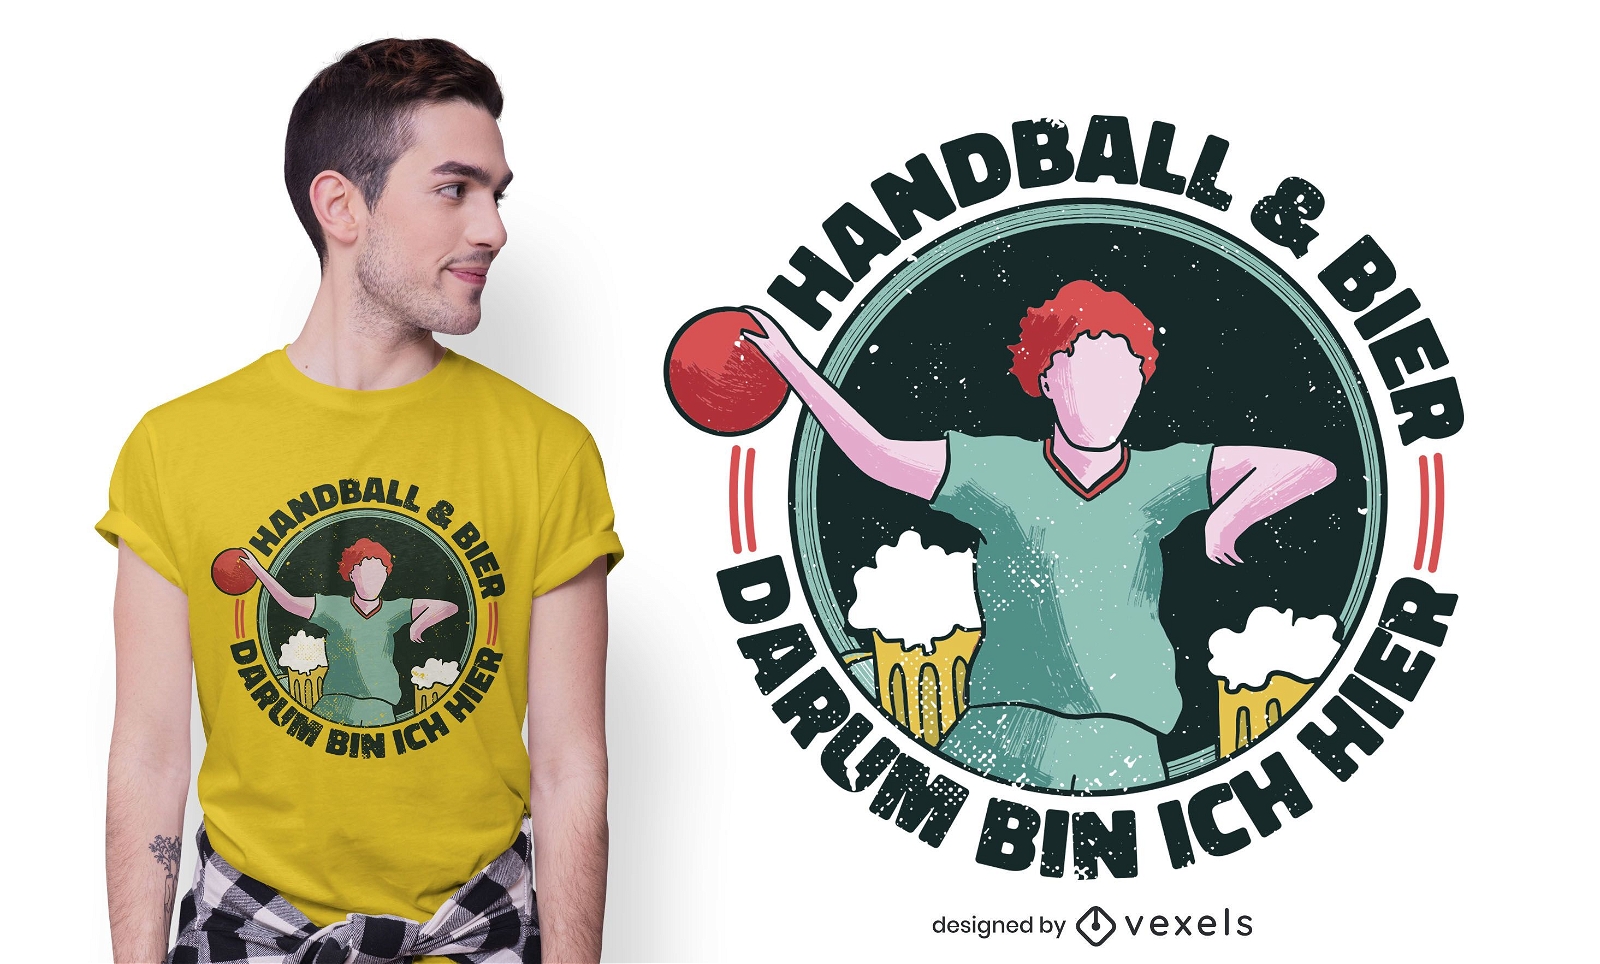 Handball beer t-shirt design